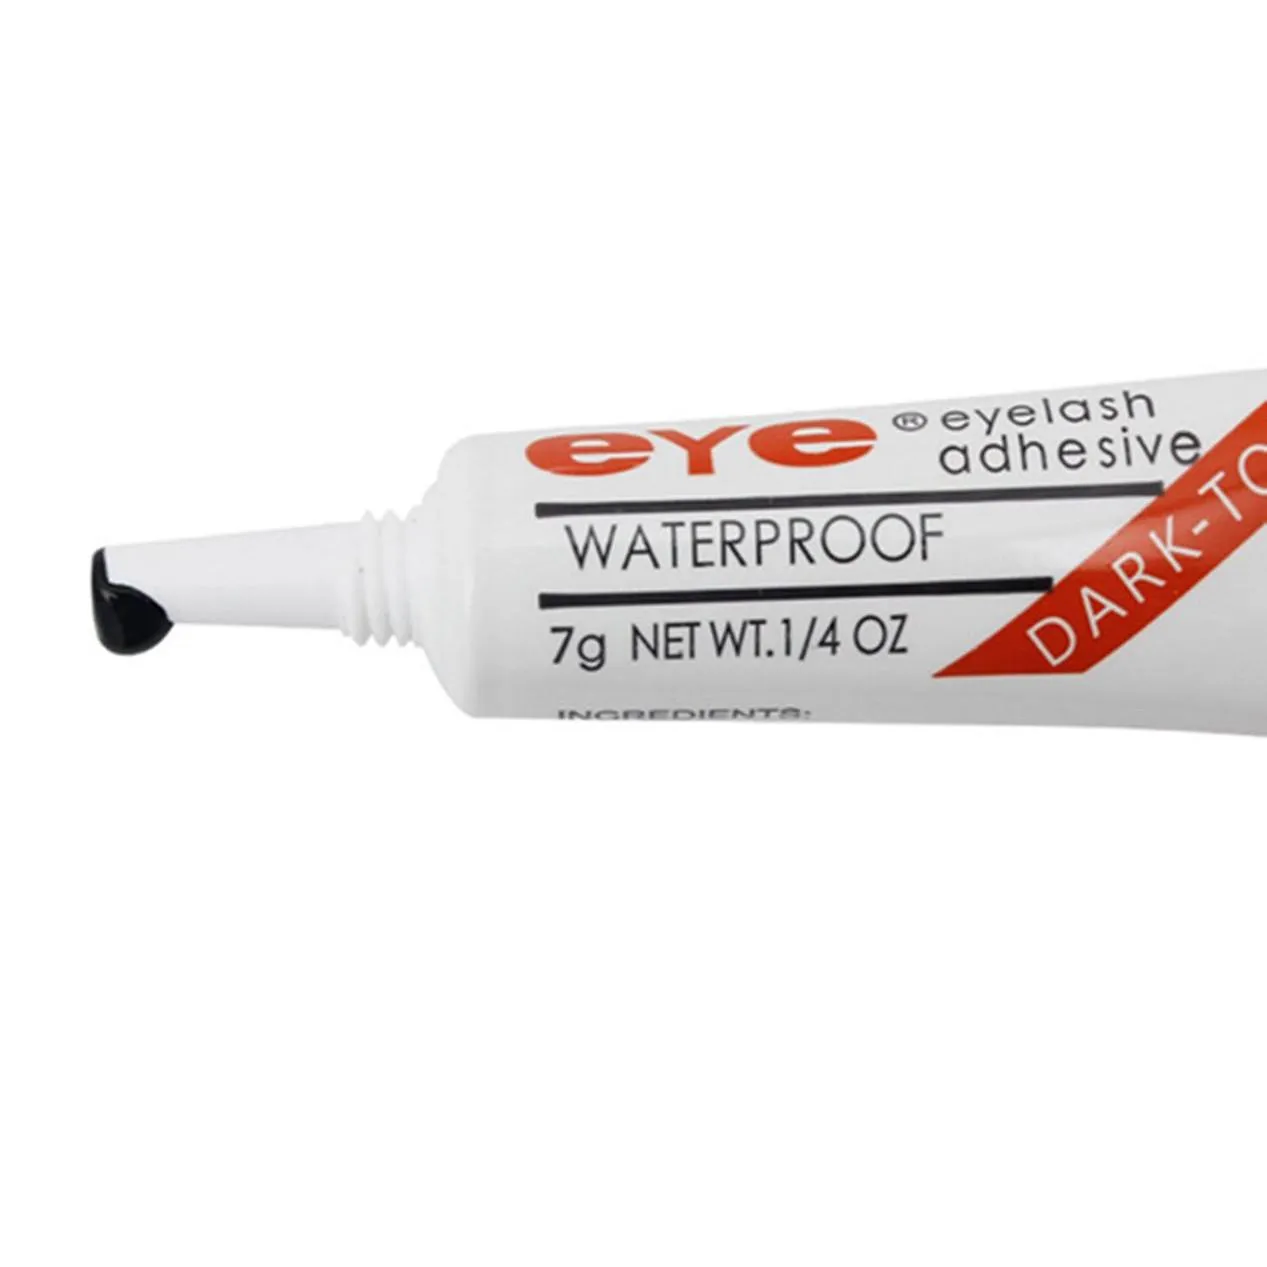 drop eye lash glue black white makeup adhesive waterproof false eyelashes adhesives glue white and black available